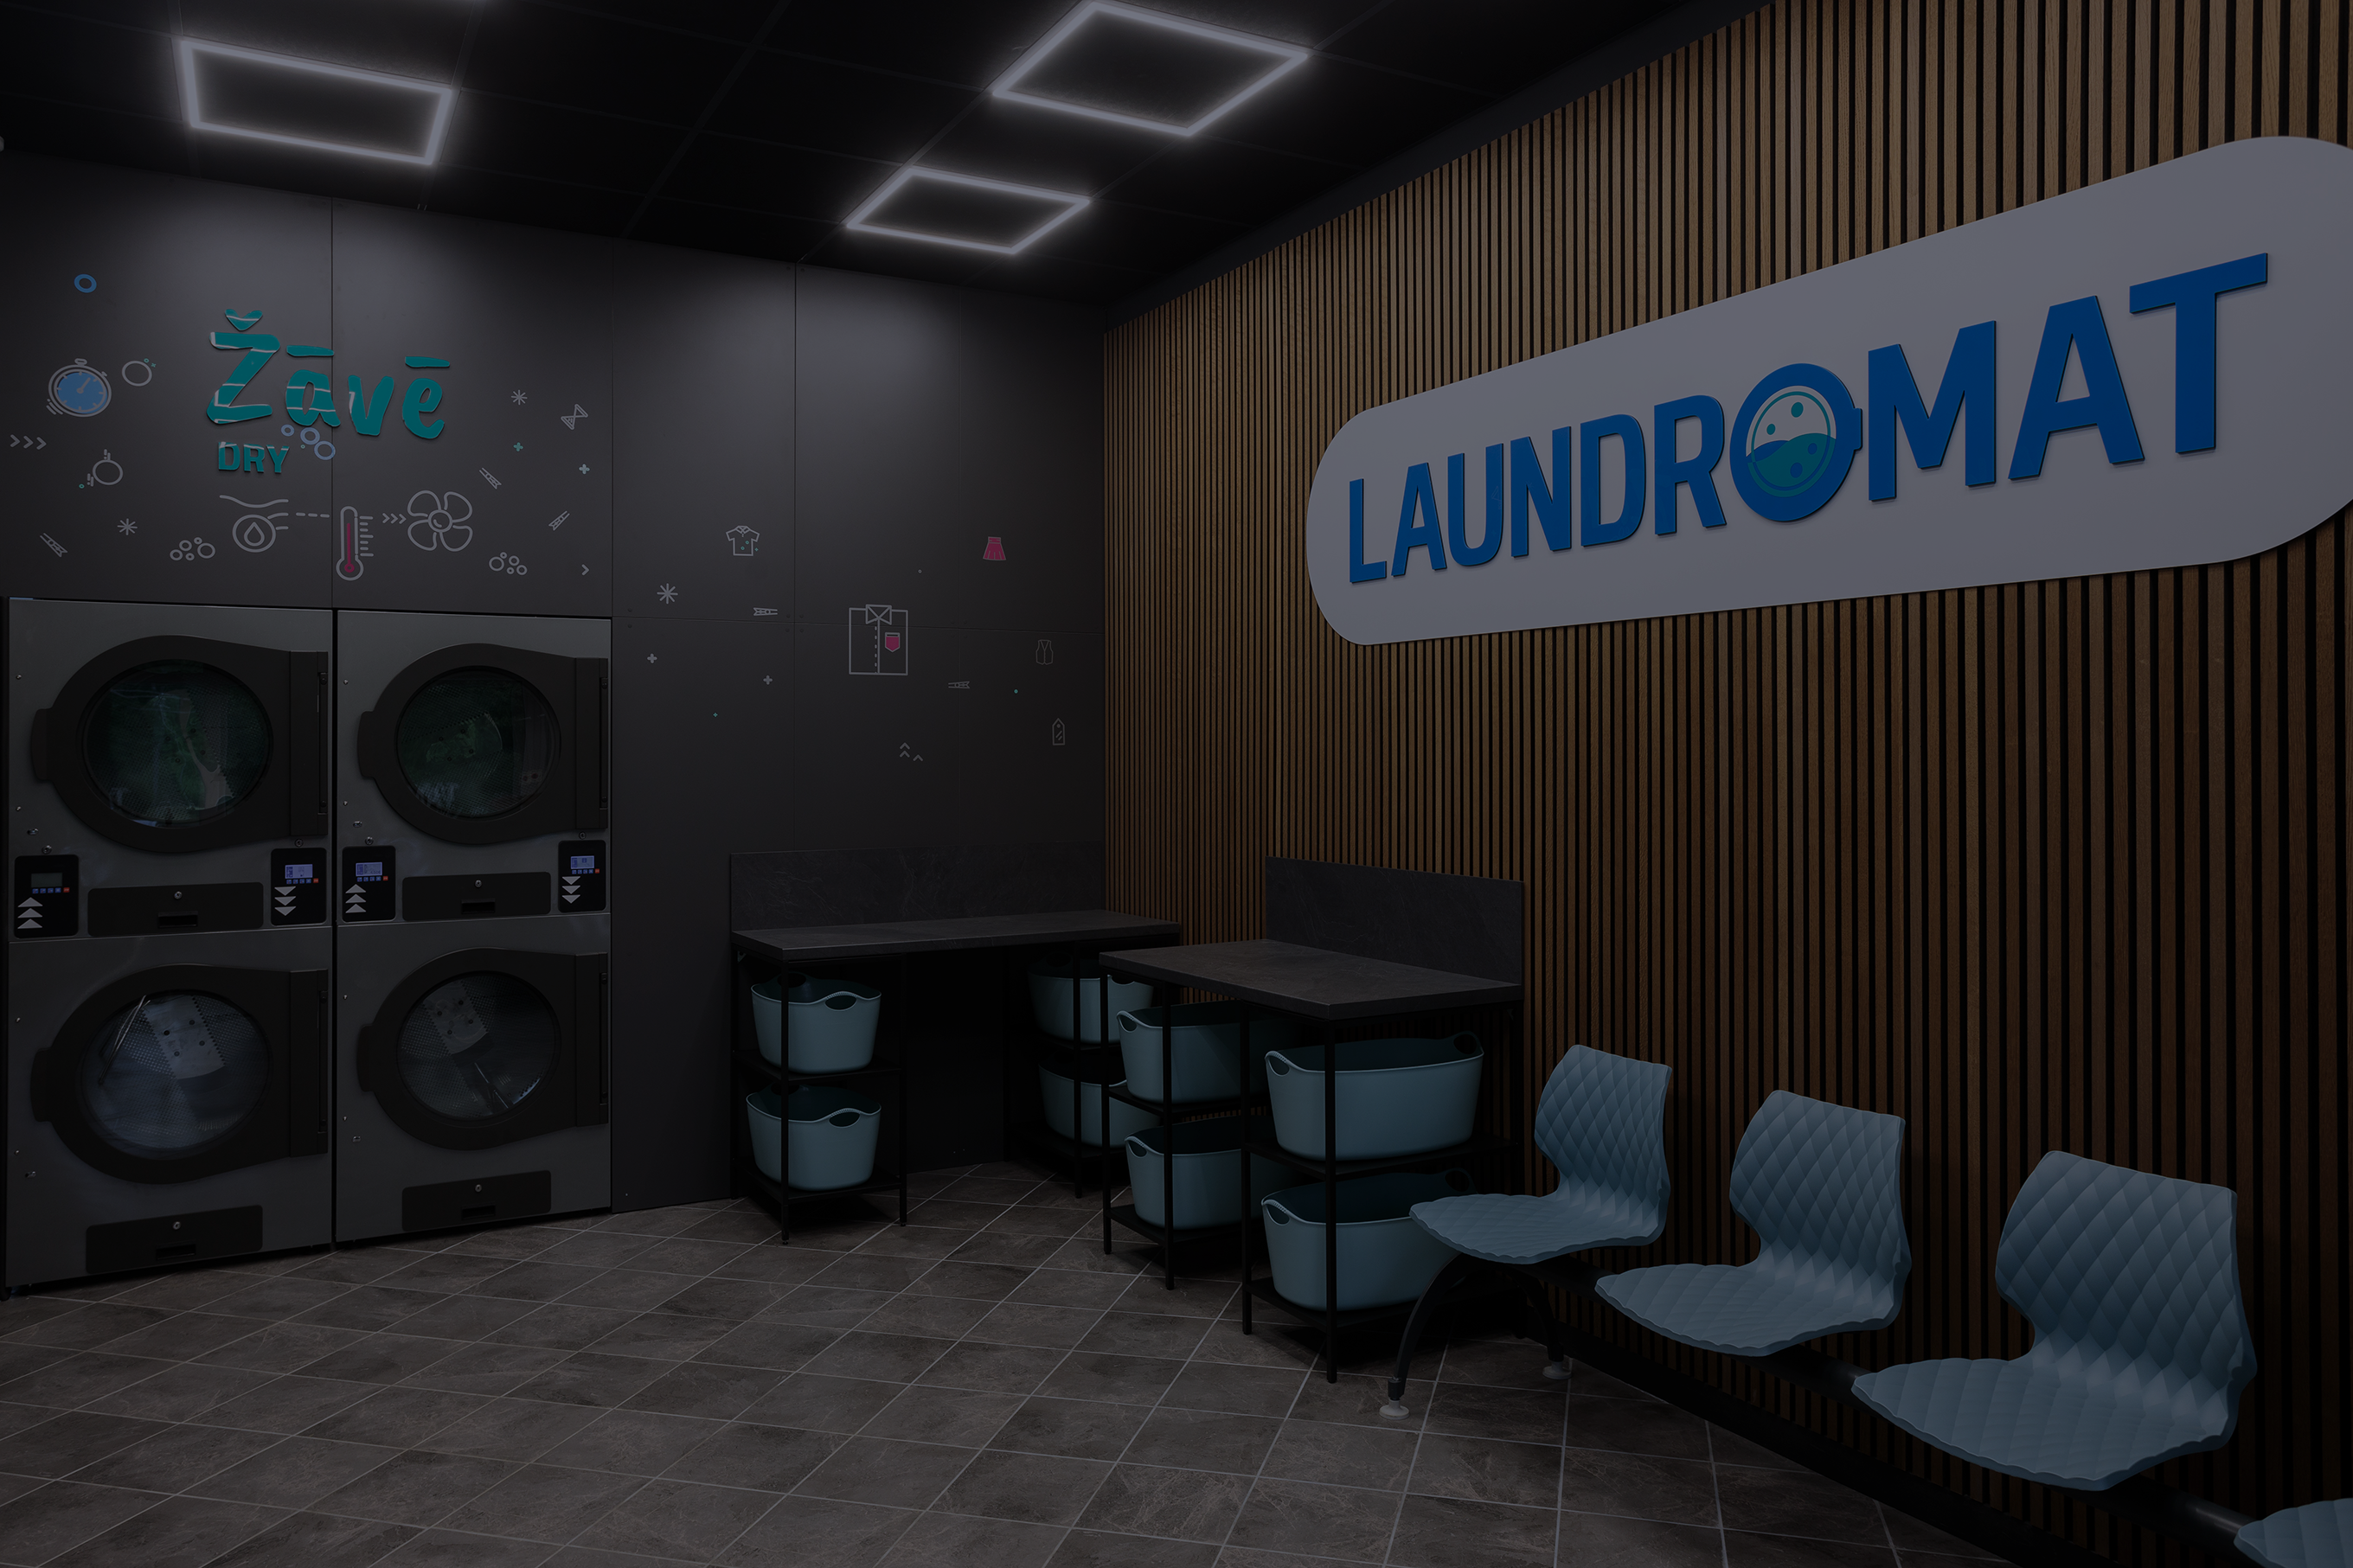 Laundromat background image